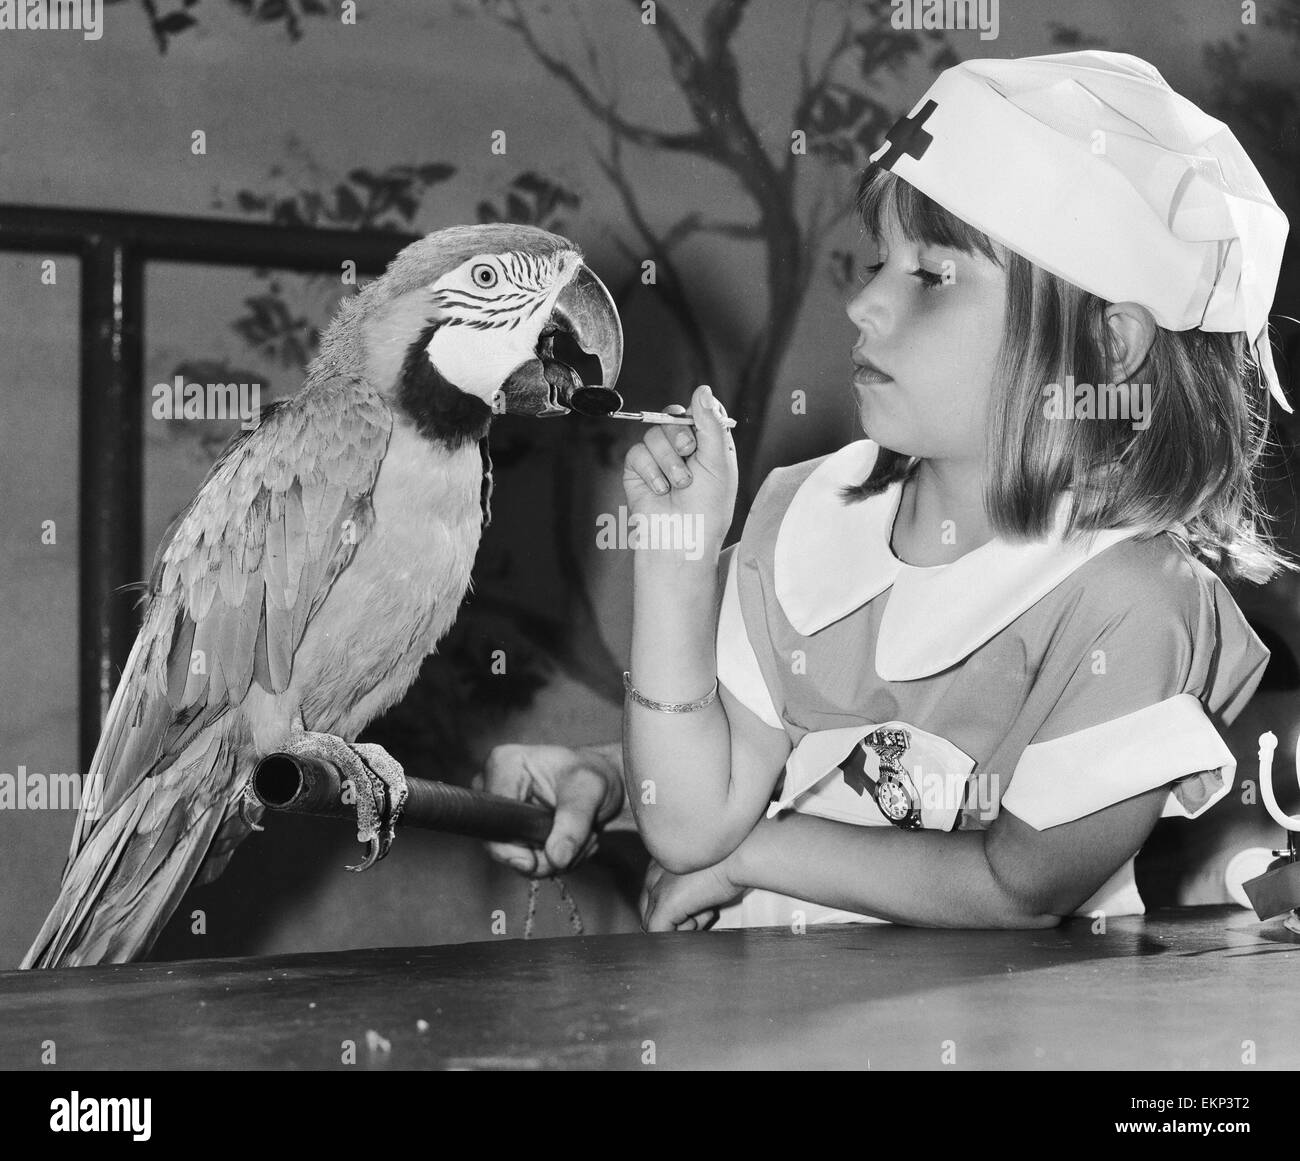 Due della esecuzione di pappagalli al Windsor Safari Park sono stati un po' male. Così Melanie Jane Marshall i cui genitori lavorano al parco, mettere sul suo infermieri uniforme e sono andato a vedere il loro. Ha prescritto il gelato. La nostra immagine mostra:Mack il pappagallo ottenere Foto Stock